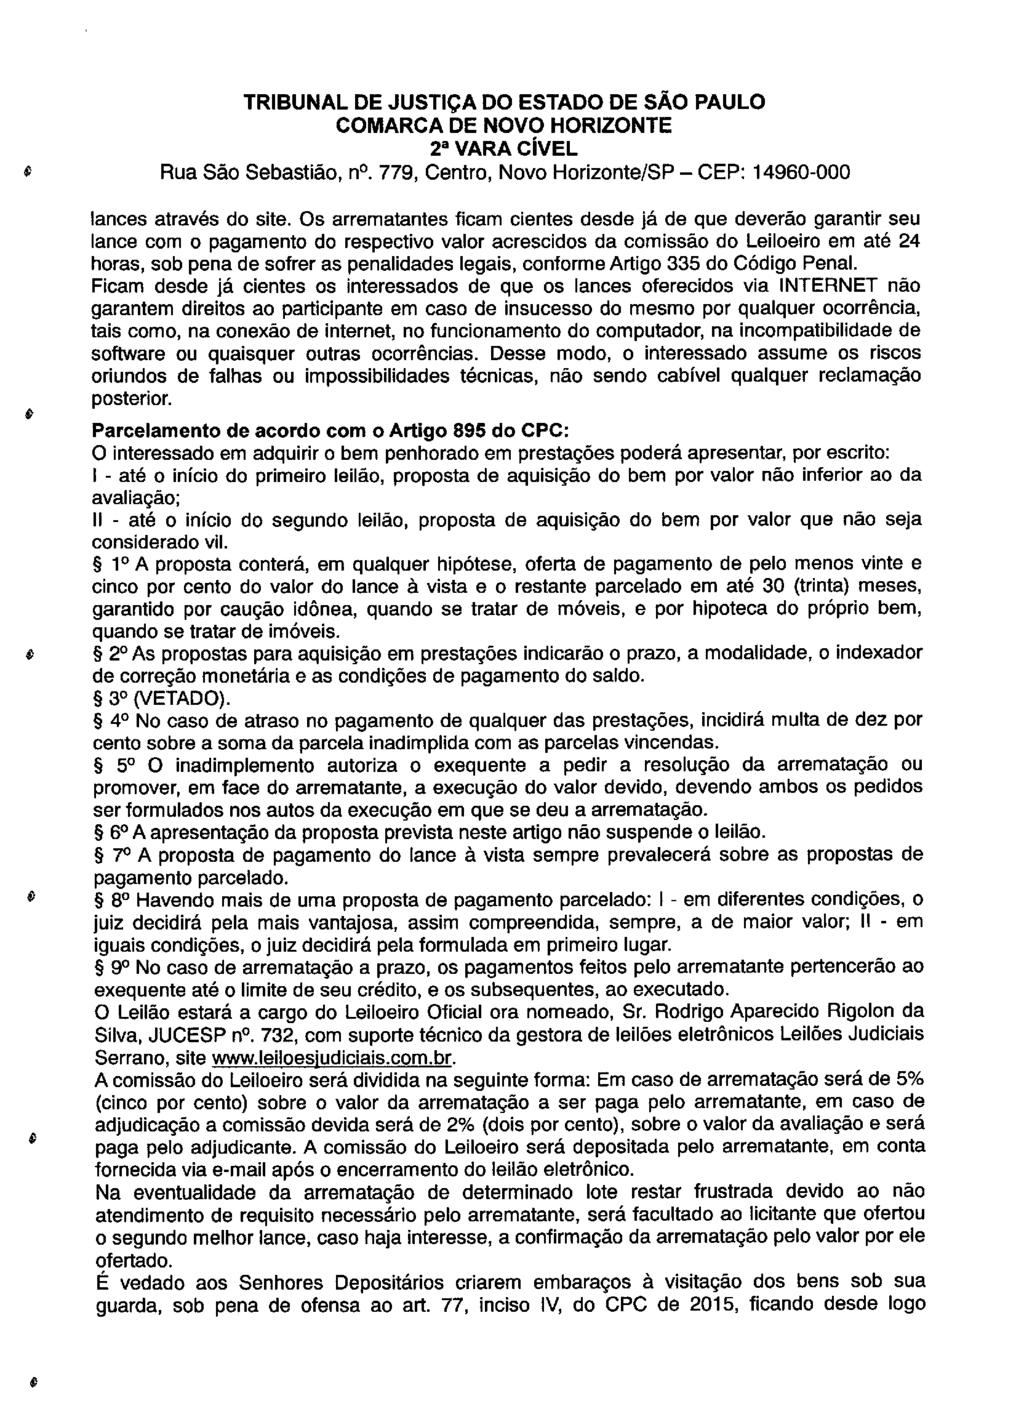 fls. 101 Este documento é cópia do original, assinado digitalmente por LUZIA REGIS DE OLIVEIRA DUARTE, liberado nos autos em 08/05/2019 às 15:14.